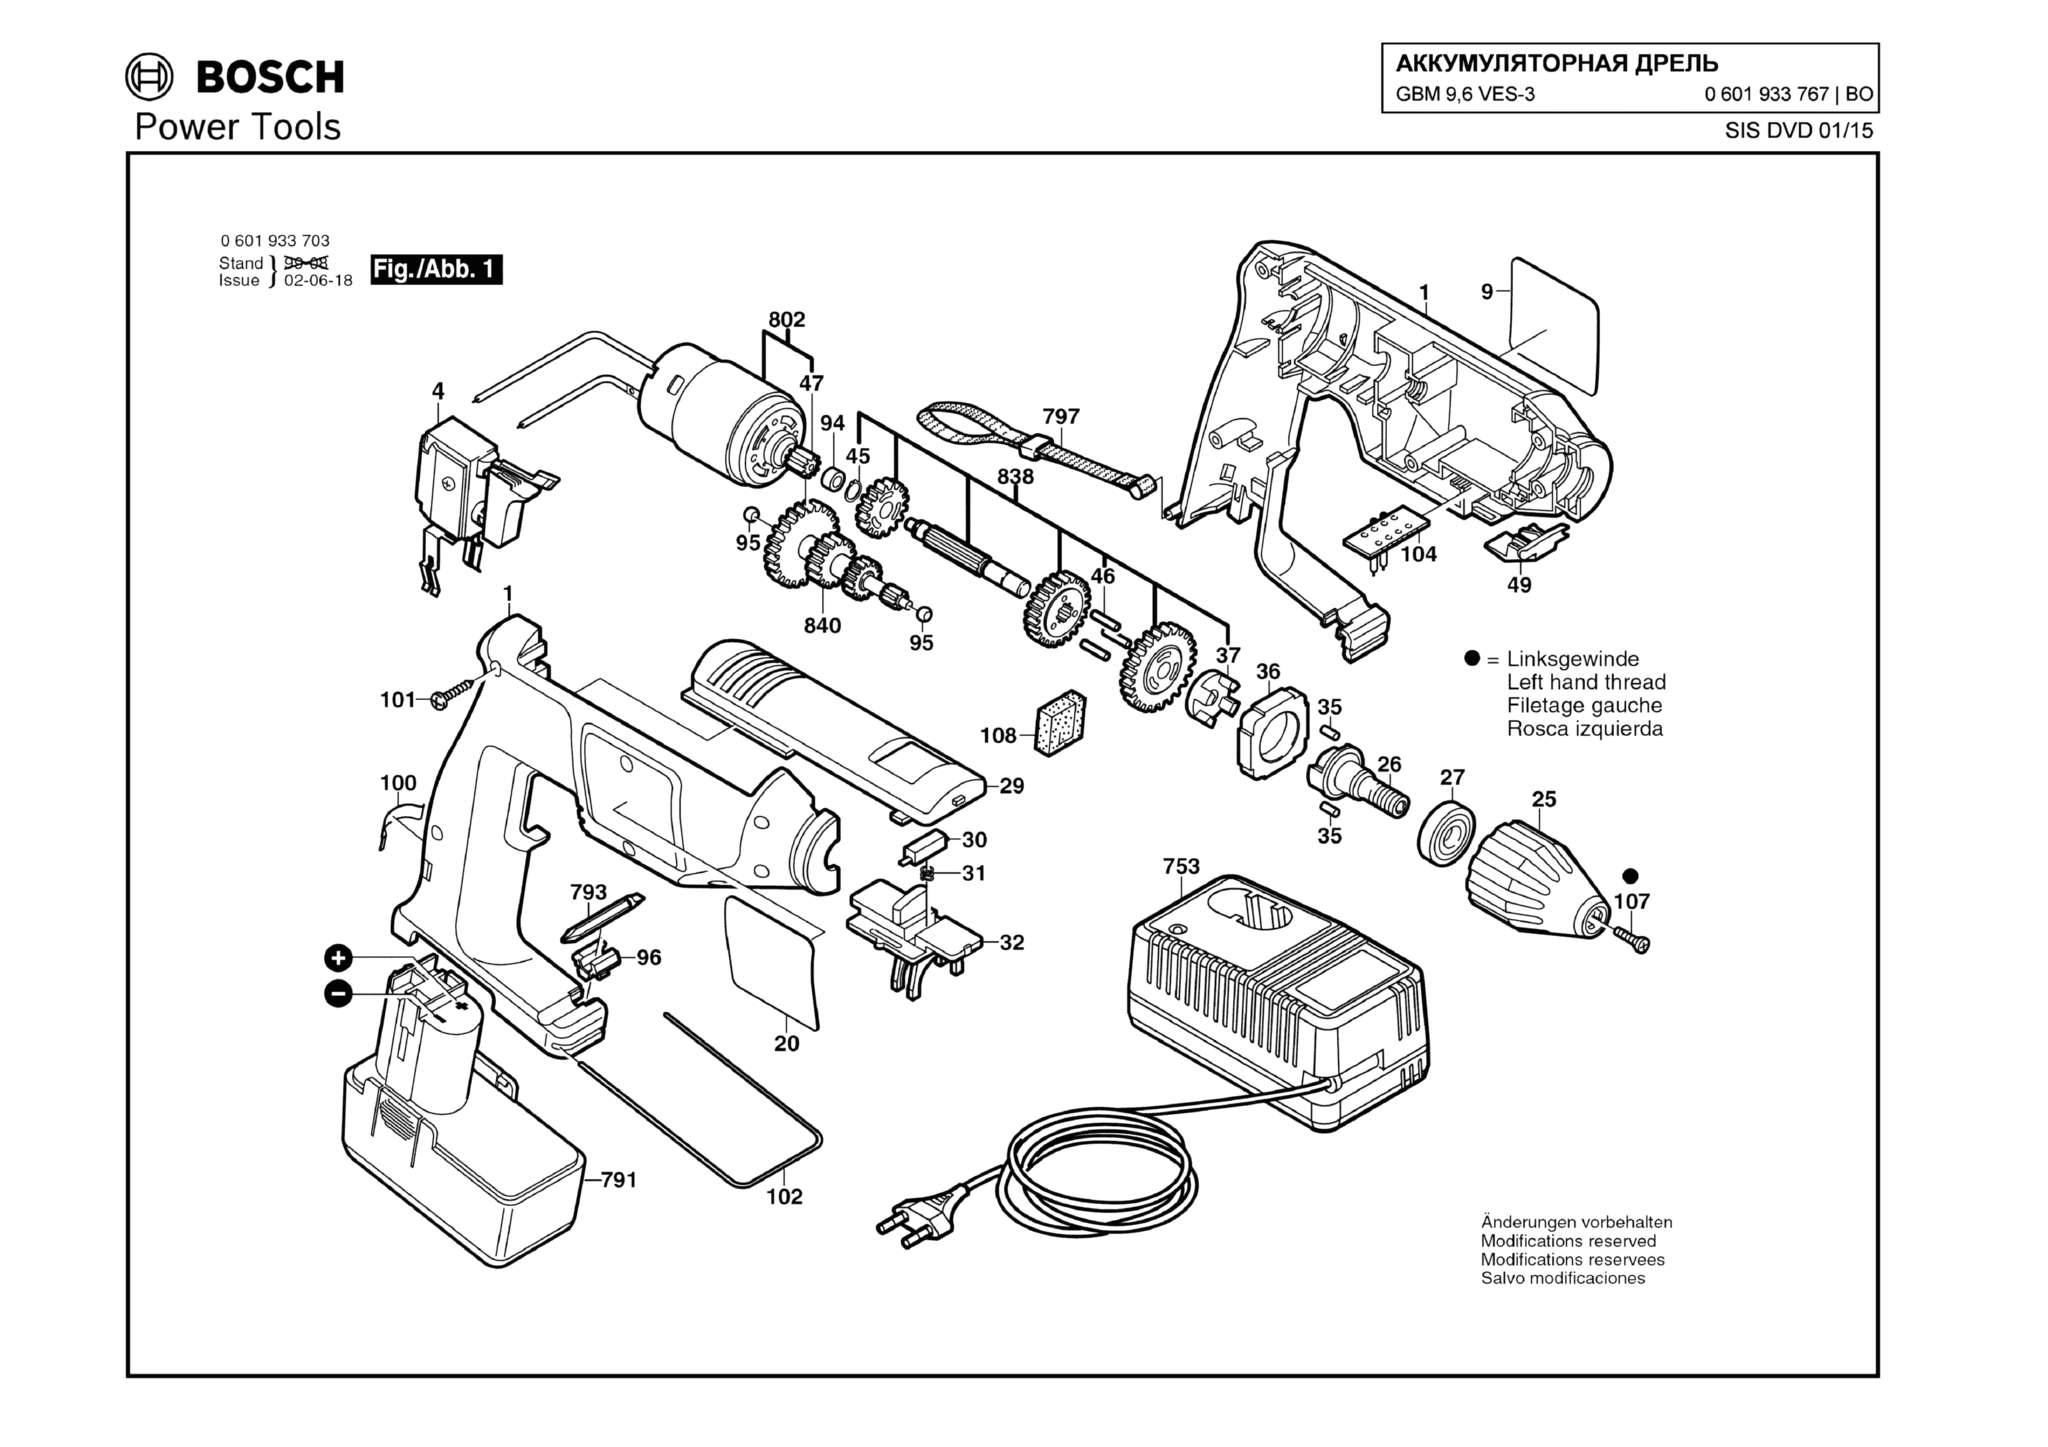 Запчасти, схема и деталировка Bosch GBM 9,6 VES-3 (ТИП 0601933767)